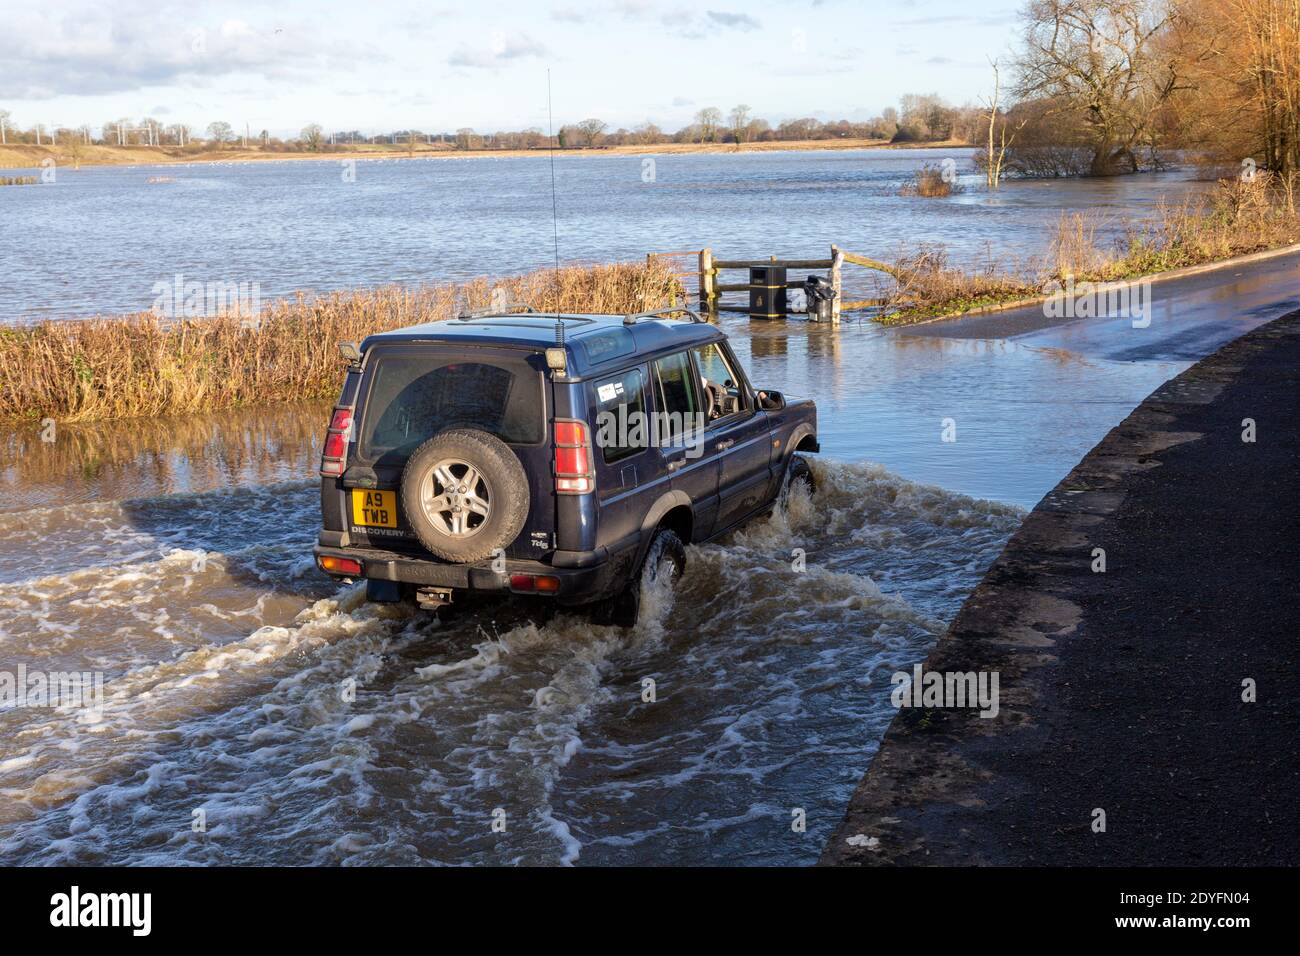 Véhicule Land Rover Discovery Td5 traversant des eaux d'inondation à Kellaways, Wiltshire, Angleterre, Royaume-Uni 24/12/20 Banque D'Images